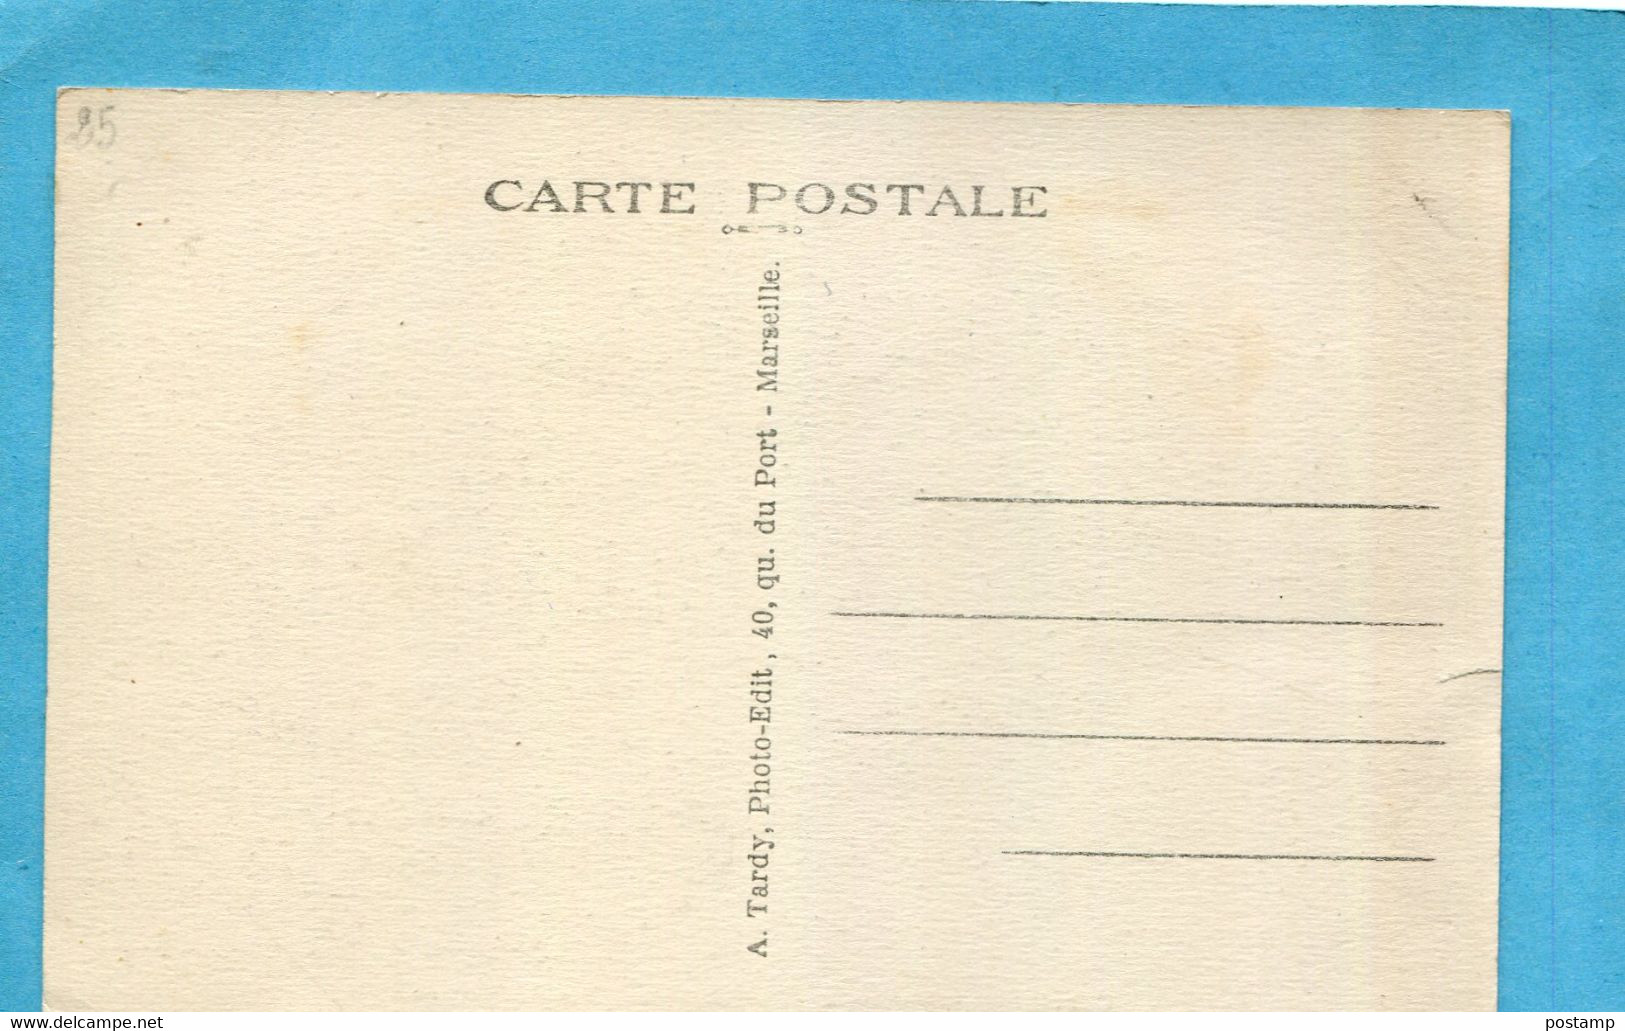 CARCES-place Del'hotel De Ville -fontaine-café De La Paix -commerces édition Tardy--années20-30 - Carces